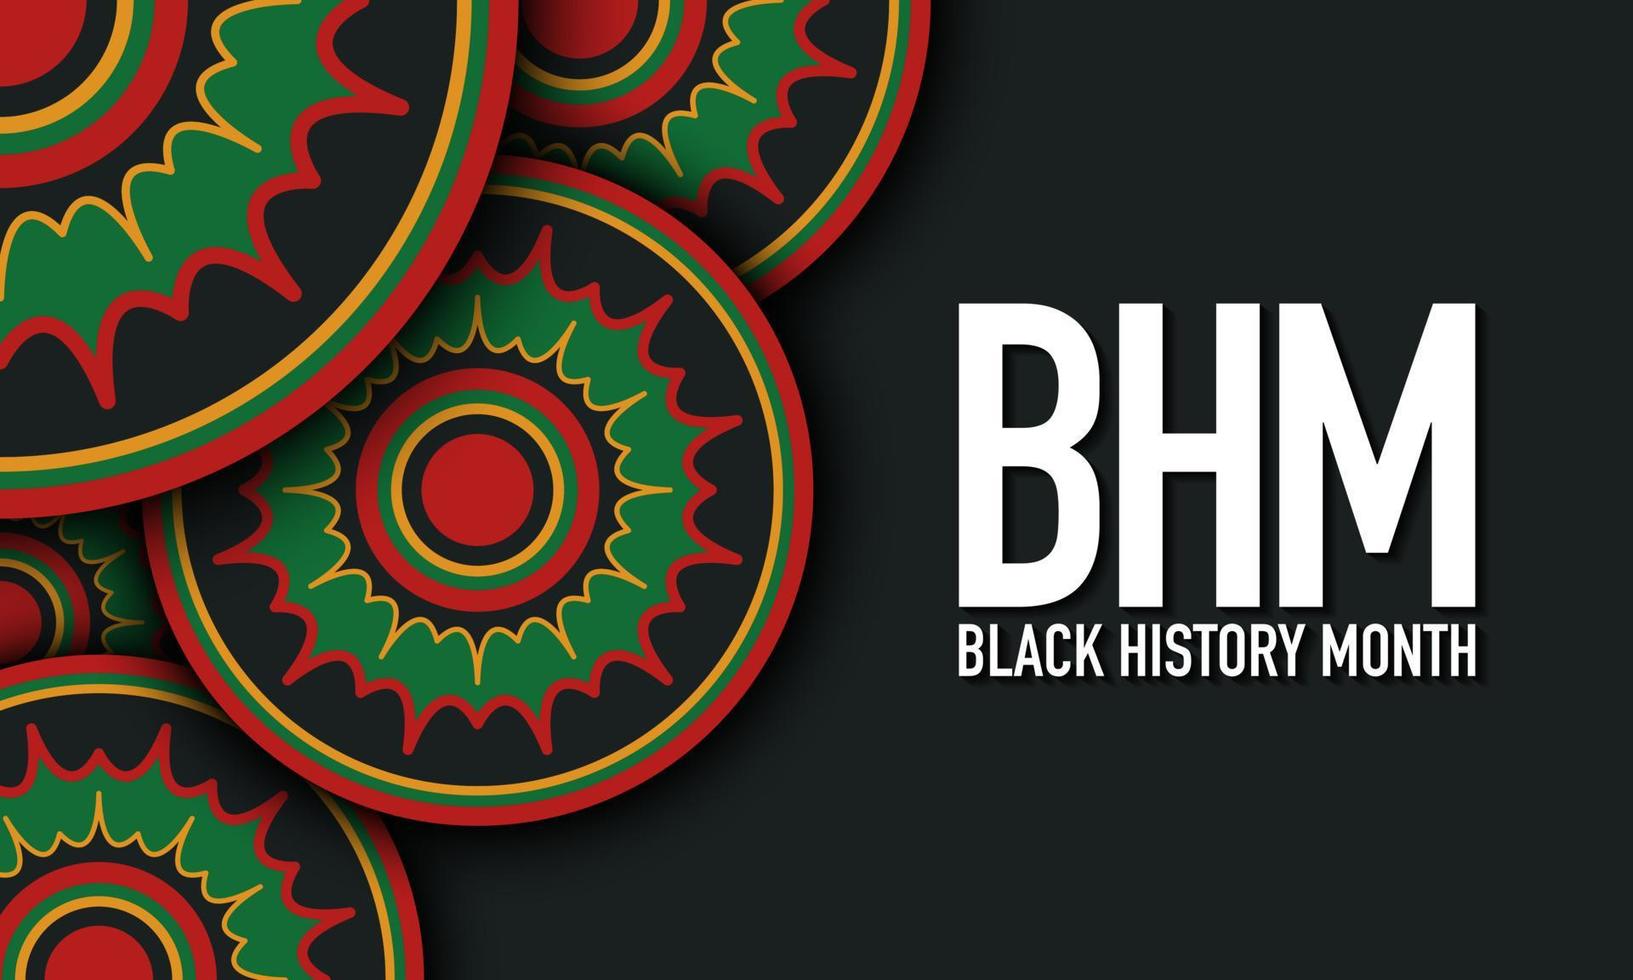 Black History Month Background Design. Vector Illustration.